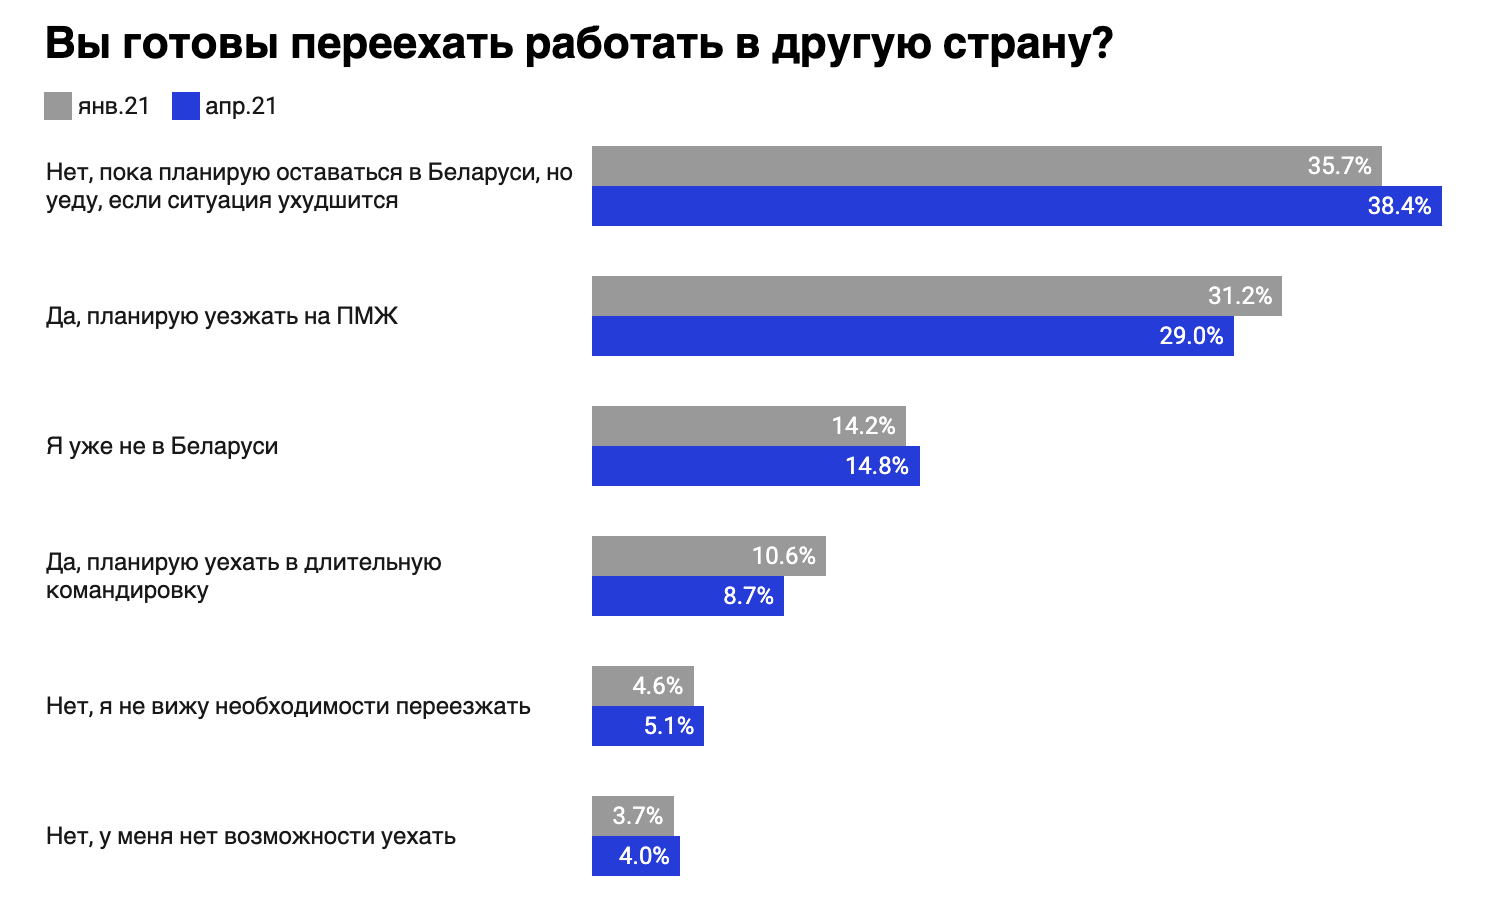 Сми2 новостной агрегатор главные россии и мире. Какой канал на втором месте по популярности.